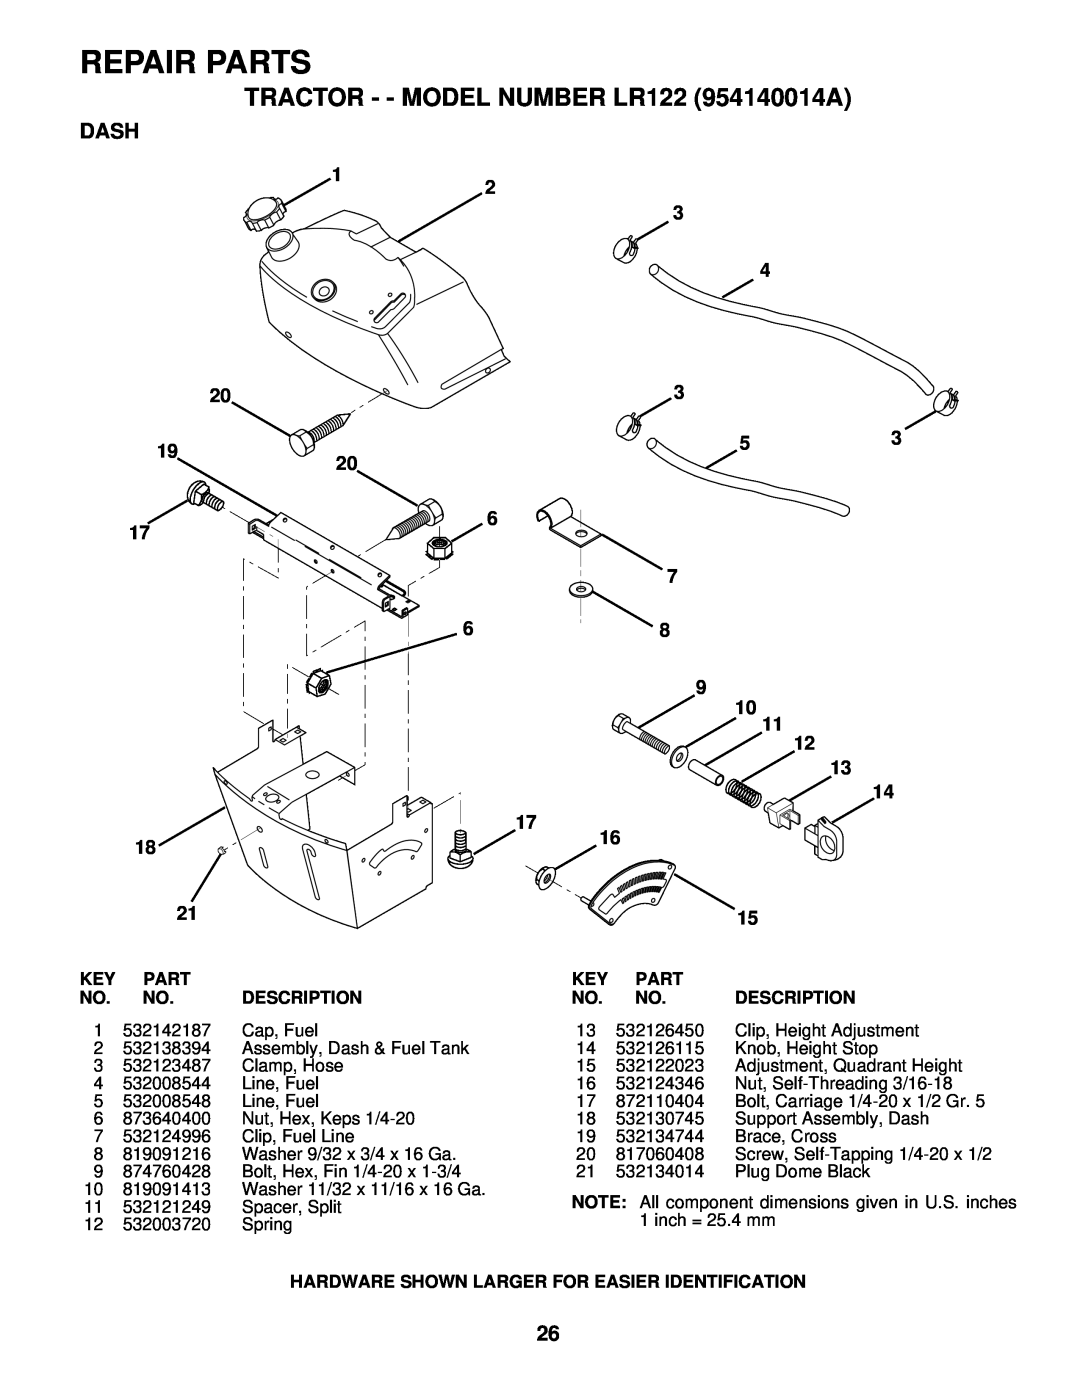 Husqvarna owner manual Dash, Repair Parts, TRACTOR - - MODEL NUMBER LR122 954140014A, Description 